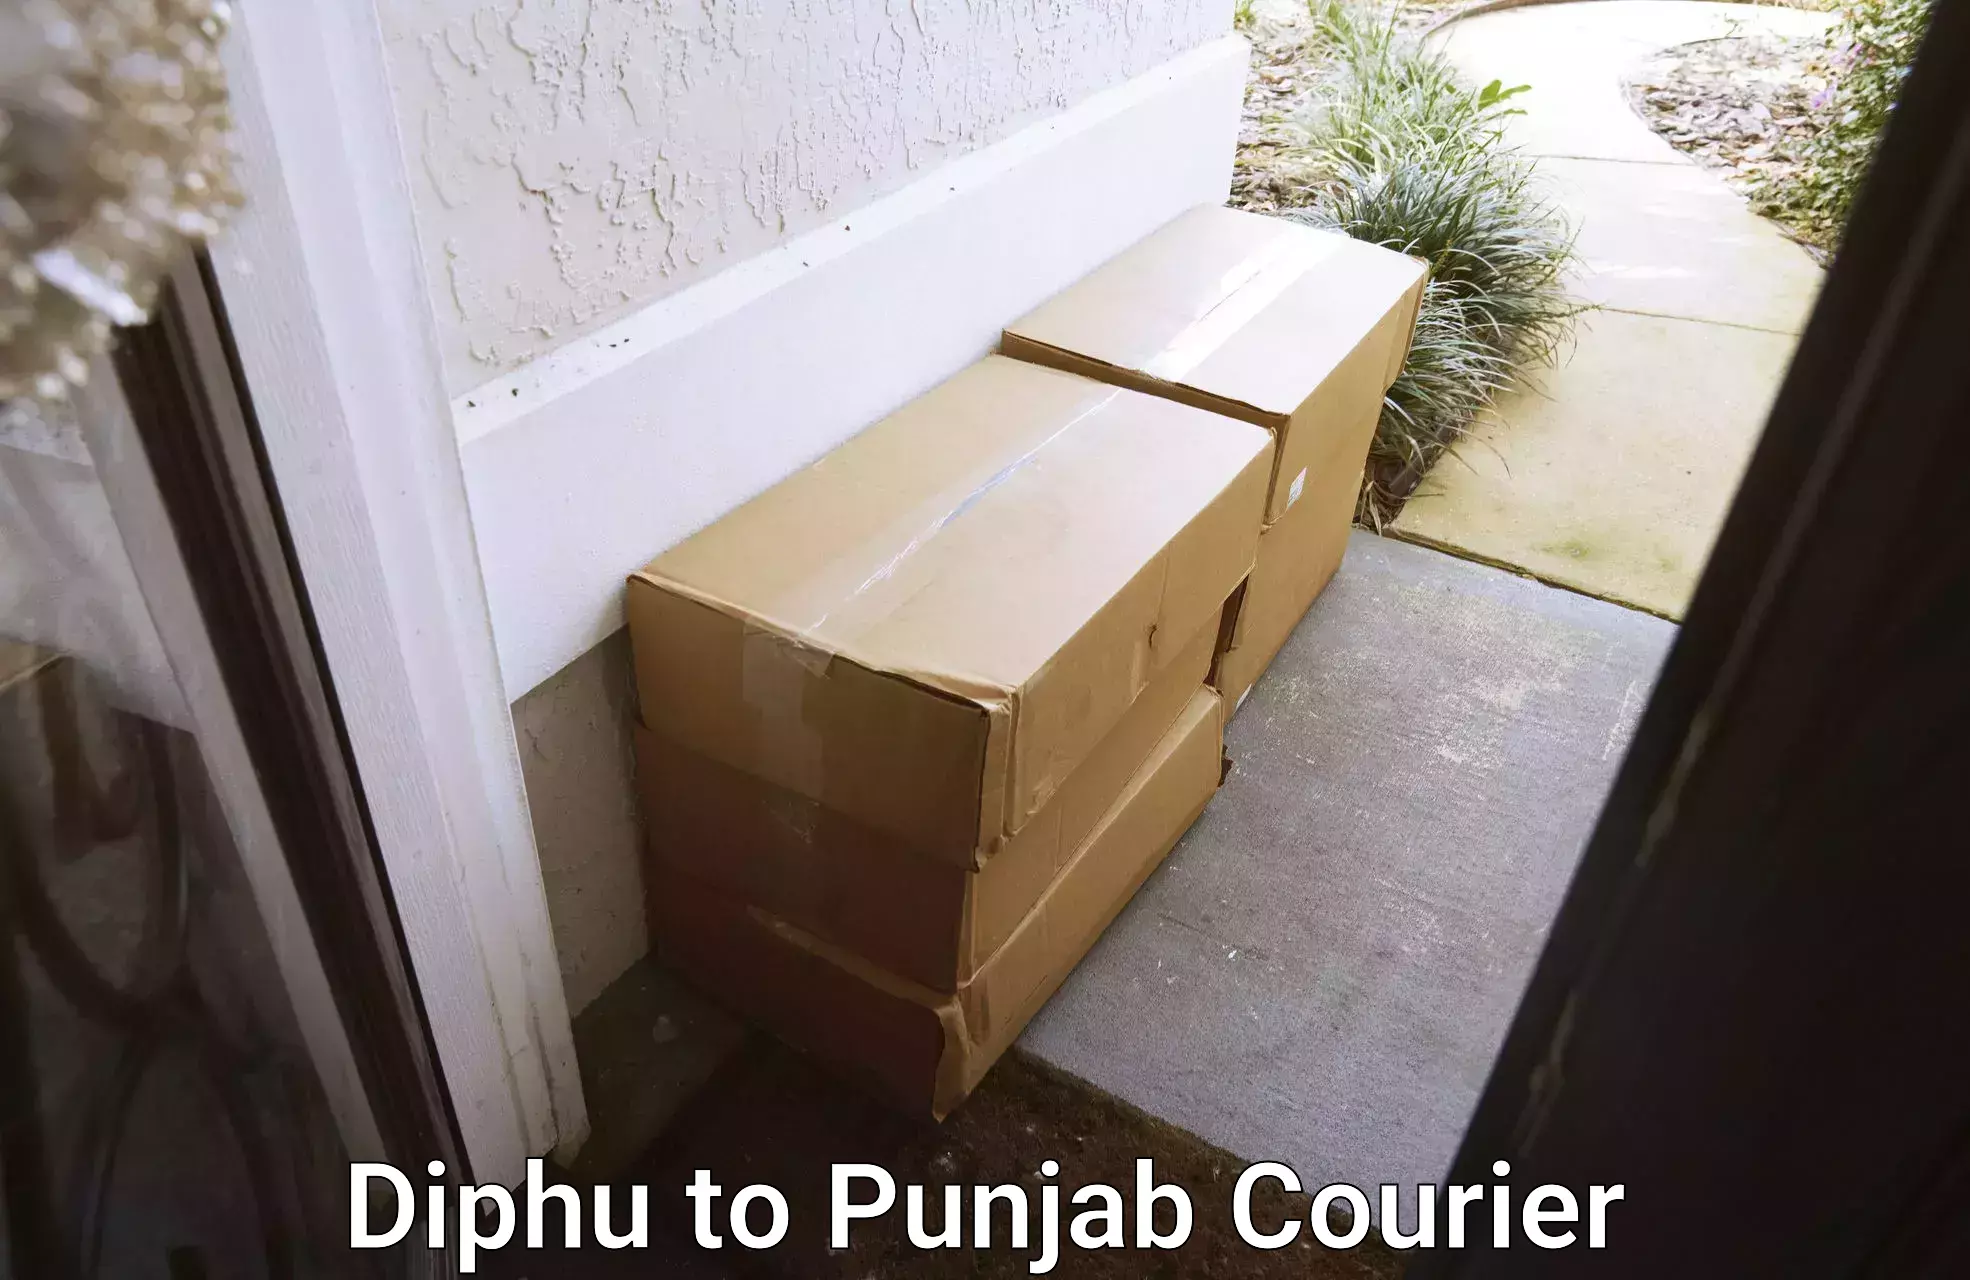 High-speed logistics services Diphu to Firozpur